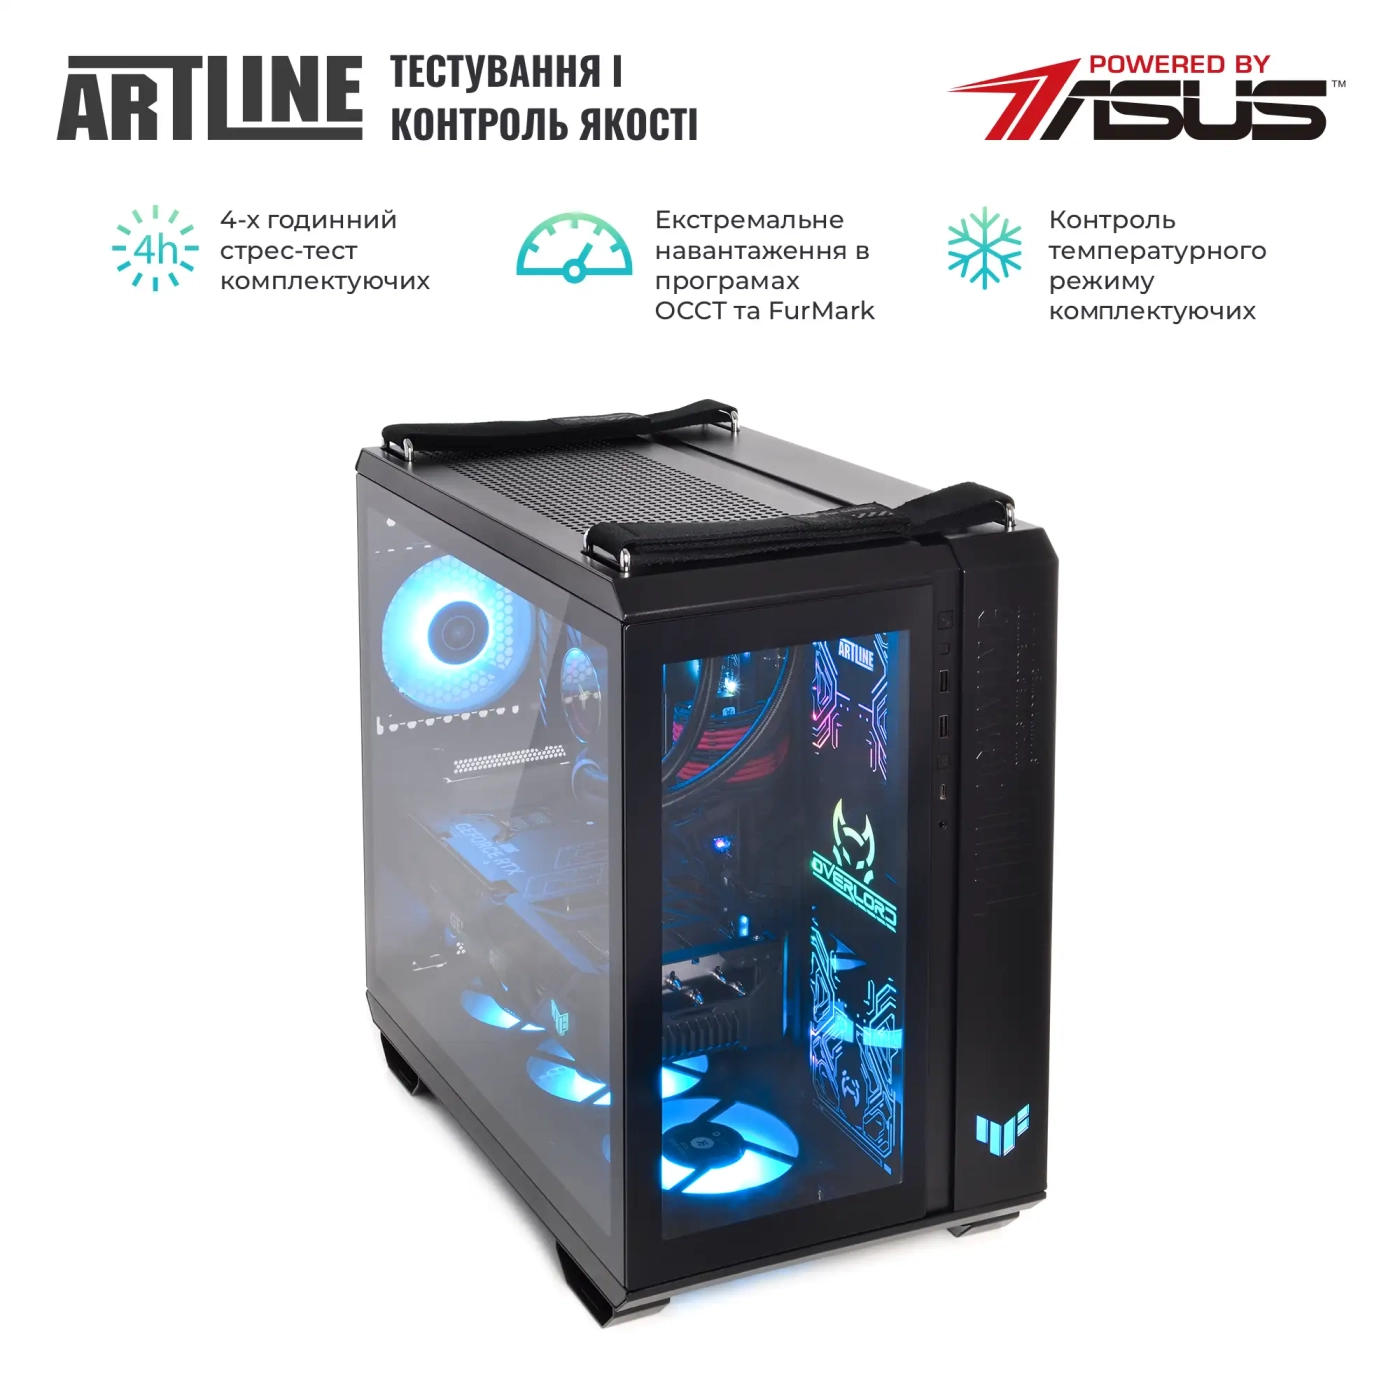 Купить Компьютер ARTLINE Gaming GT502v25 - фото 9